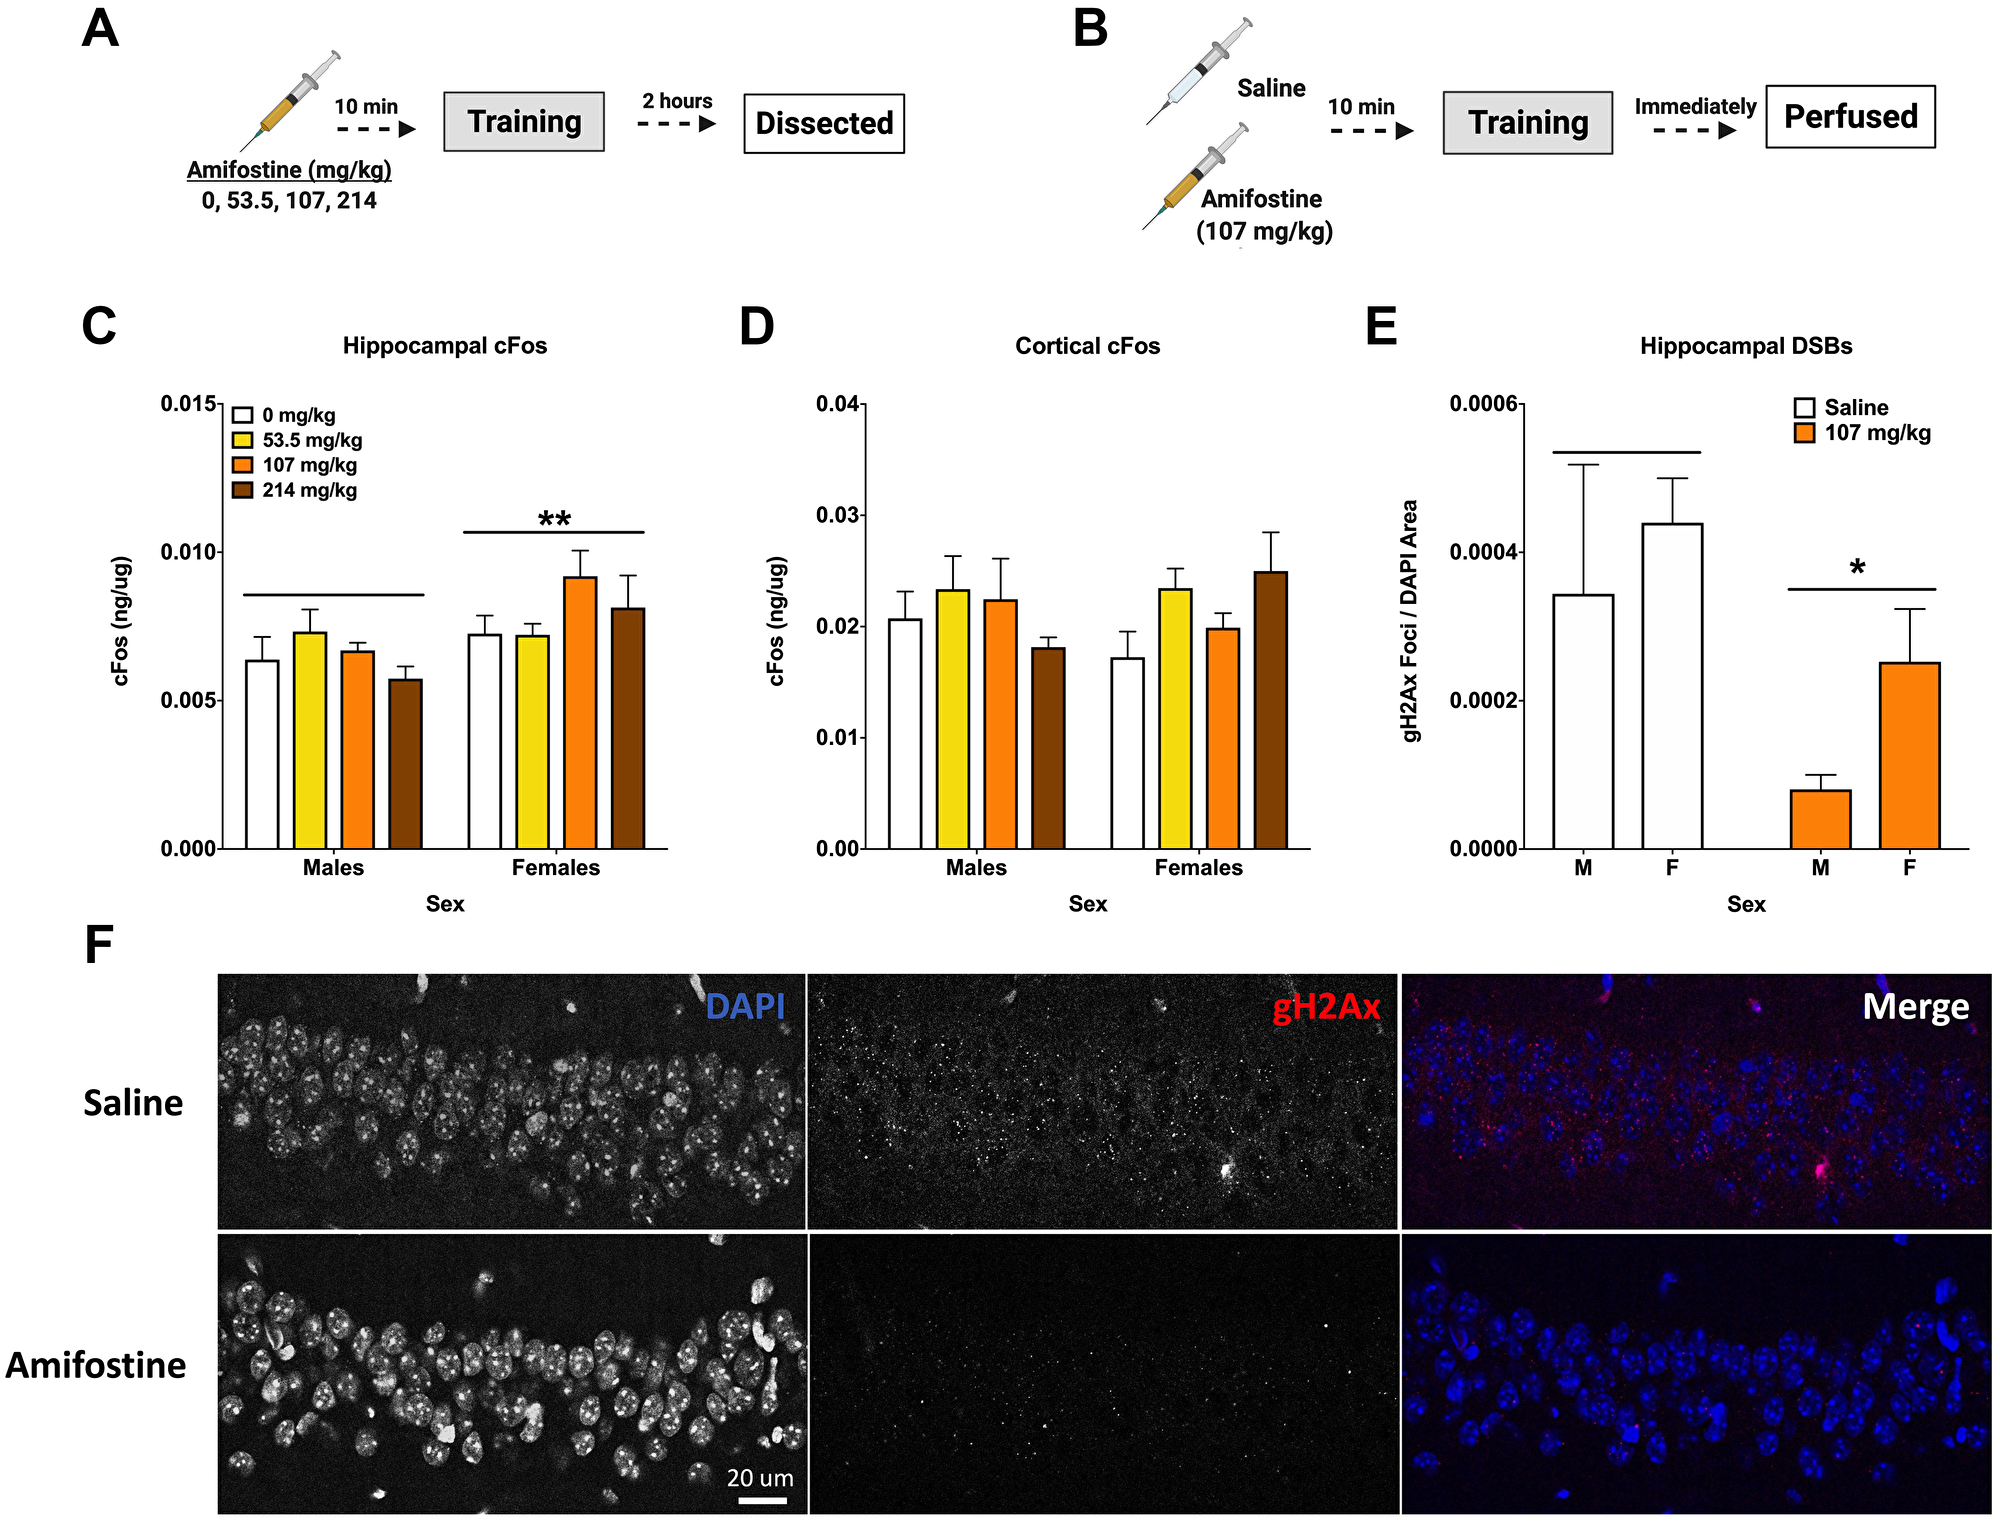 Amifostine decreases hippocampal DSBs but not cFos.